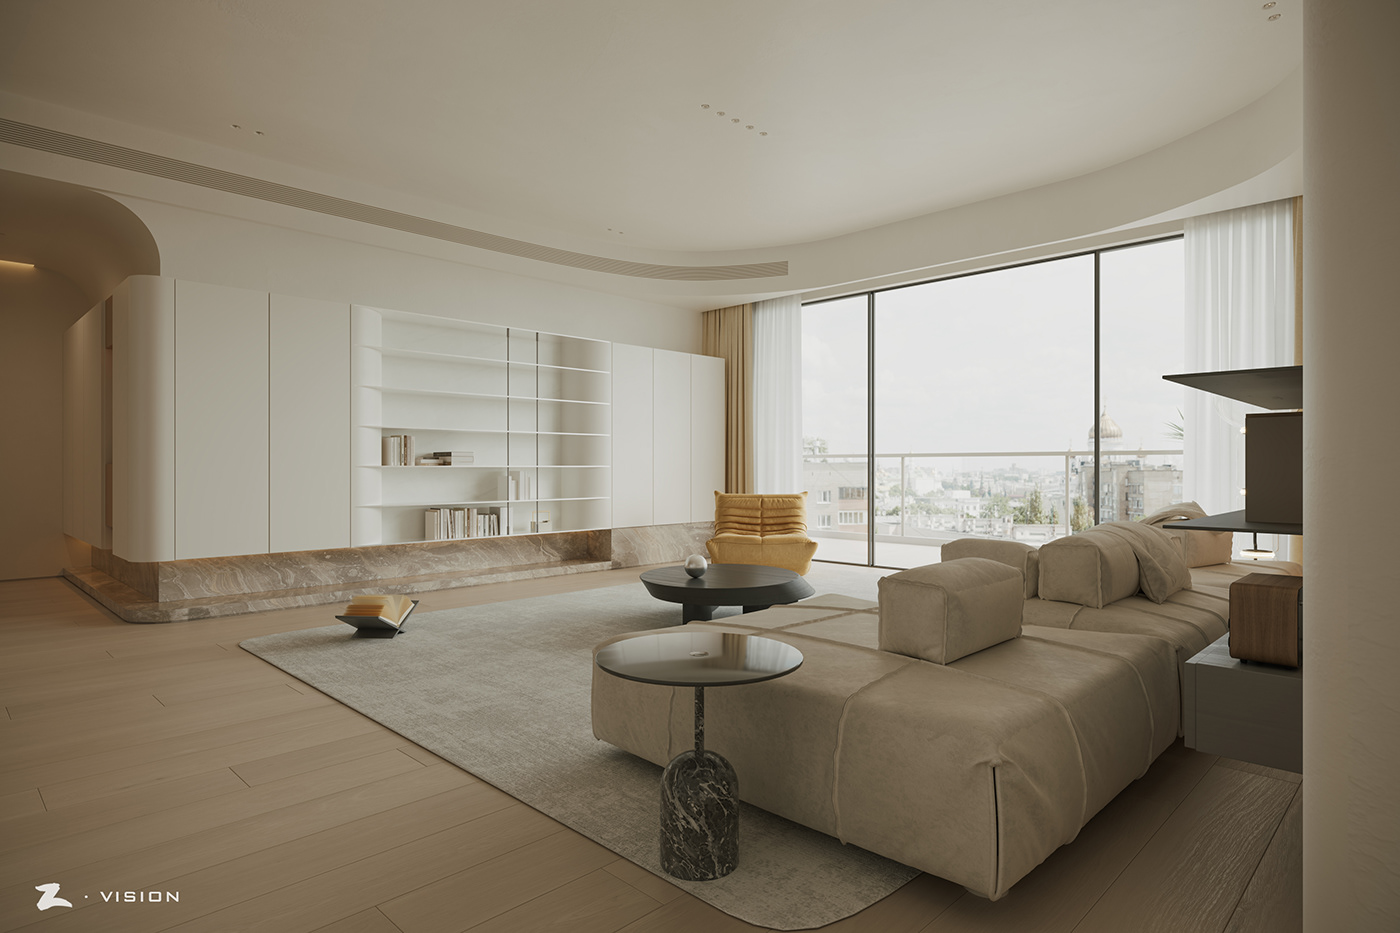 3ds max architecture art design Interior modern Render indoor Minimalism